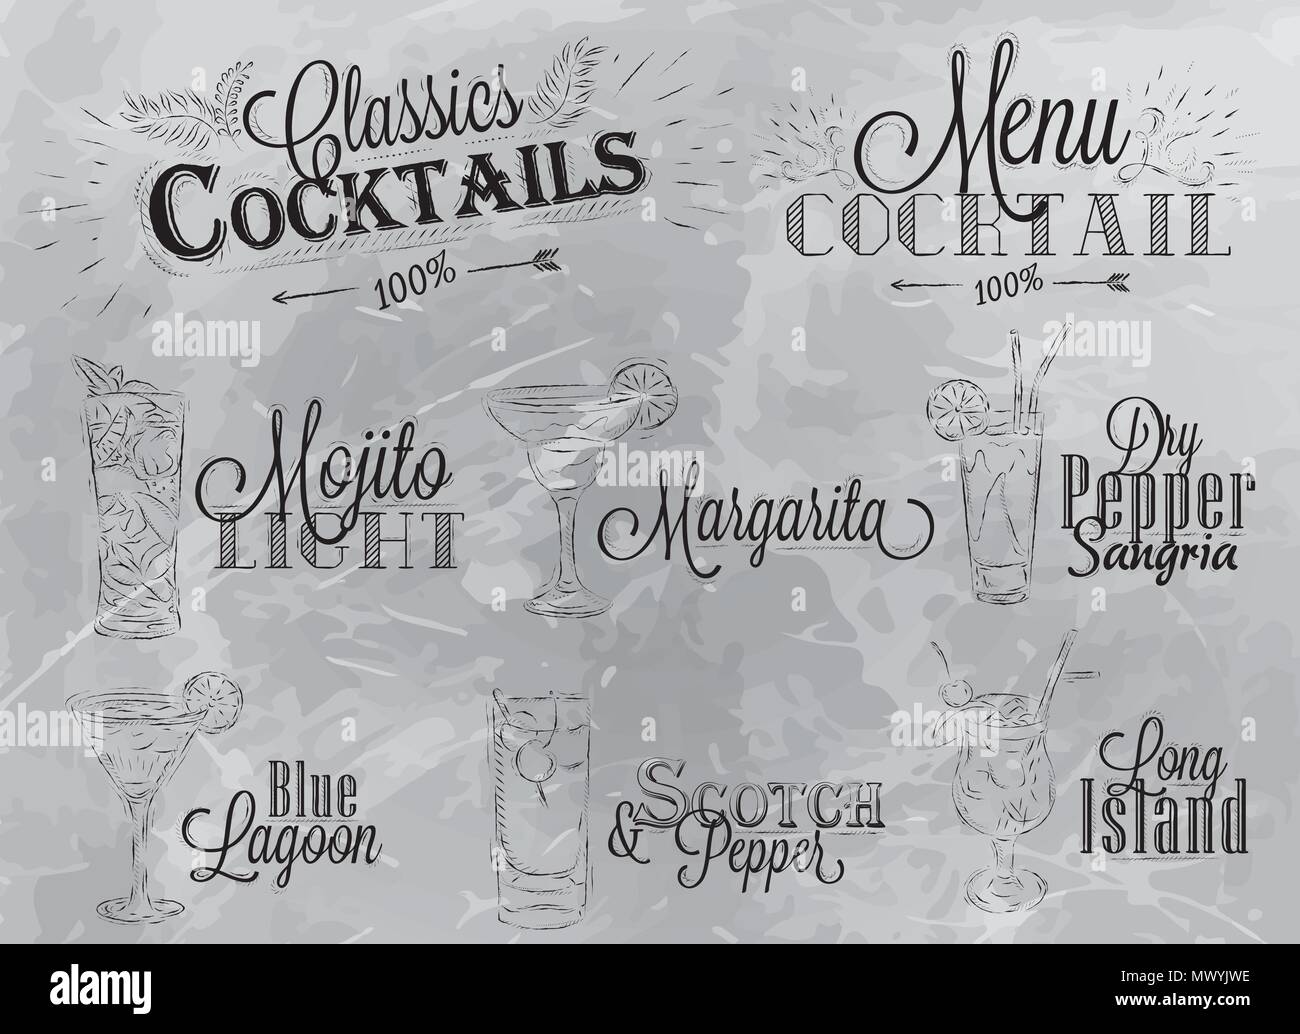 Jeu de carte de cocktails dans un style vintage dessin stylisé sur fond gris anthracite, Mojito cocktails avec l'illustre, le lagon bleu marguerite Sc Illustration de Vecteur